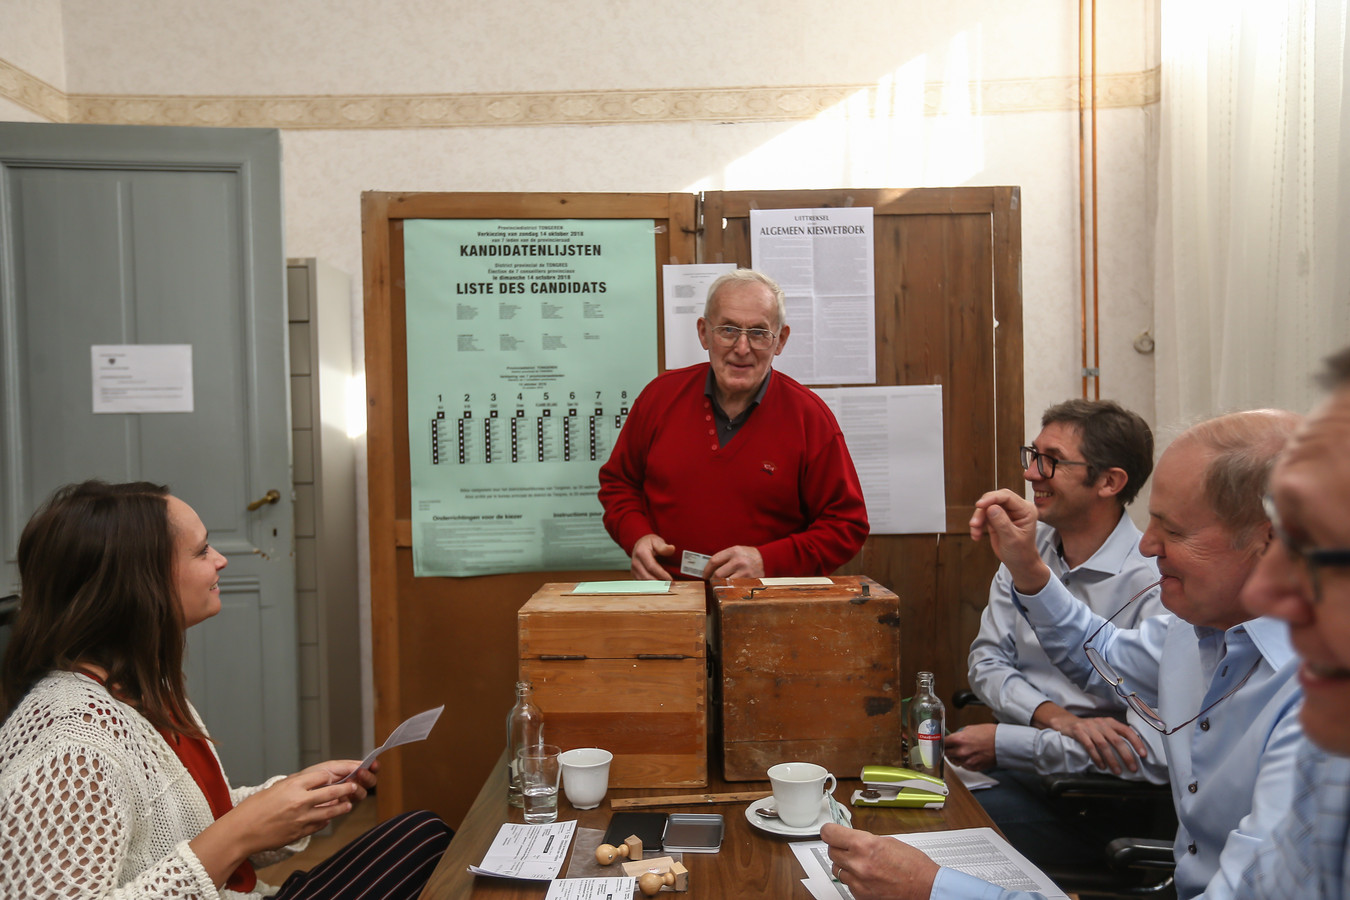 Serge Louwet, oud-burgemeester en raadslid in Herstappe, brengt een dag na de vechtpartij zijn stem uit in het gemeentehuis.